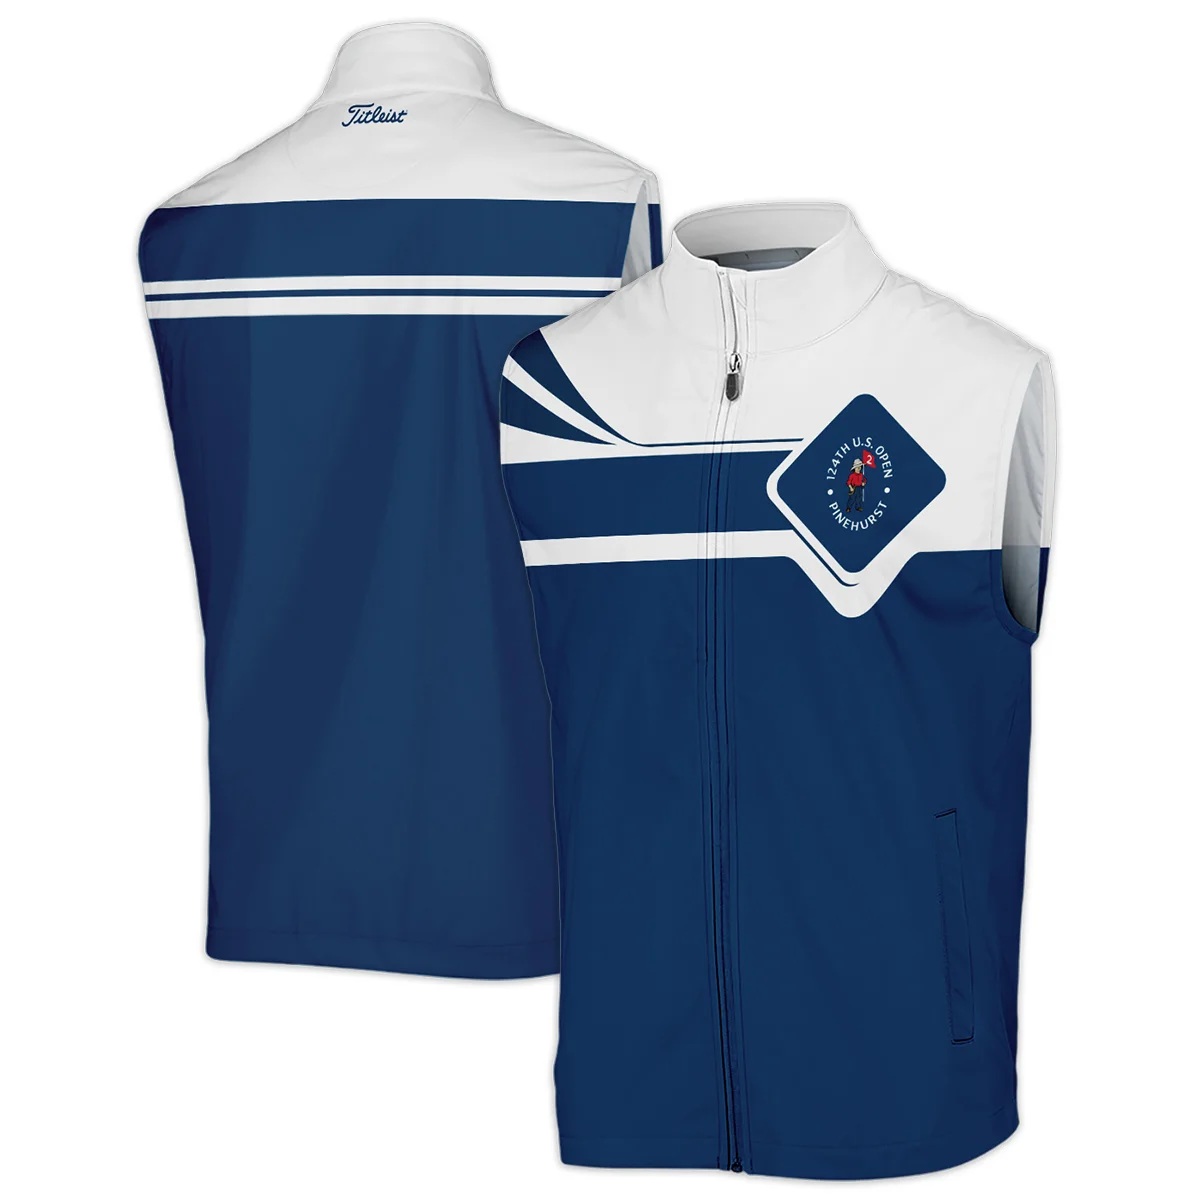 Titleist 124th U.S. Open Pinehurst Blue Pattern Sport Zipper Hoodie Shirt Style Classic